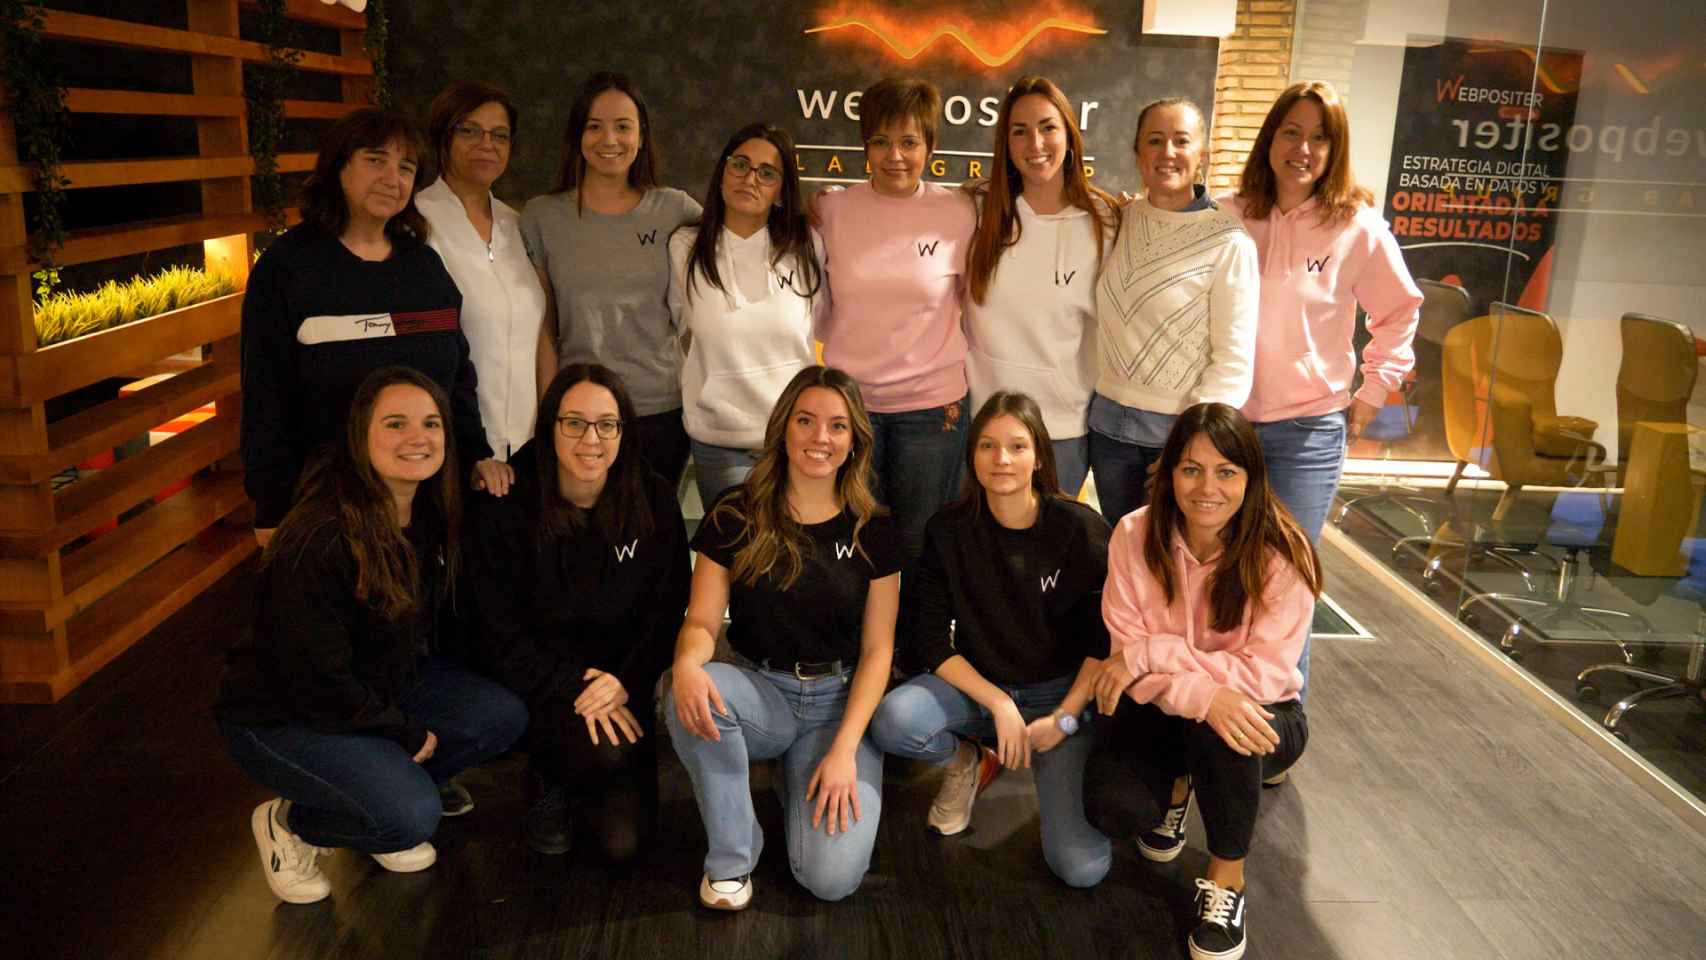 Las mujeres desempeñan el 60% de los cargos directivos de la empresa alicantina Webpositer